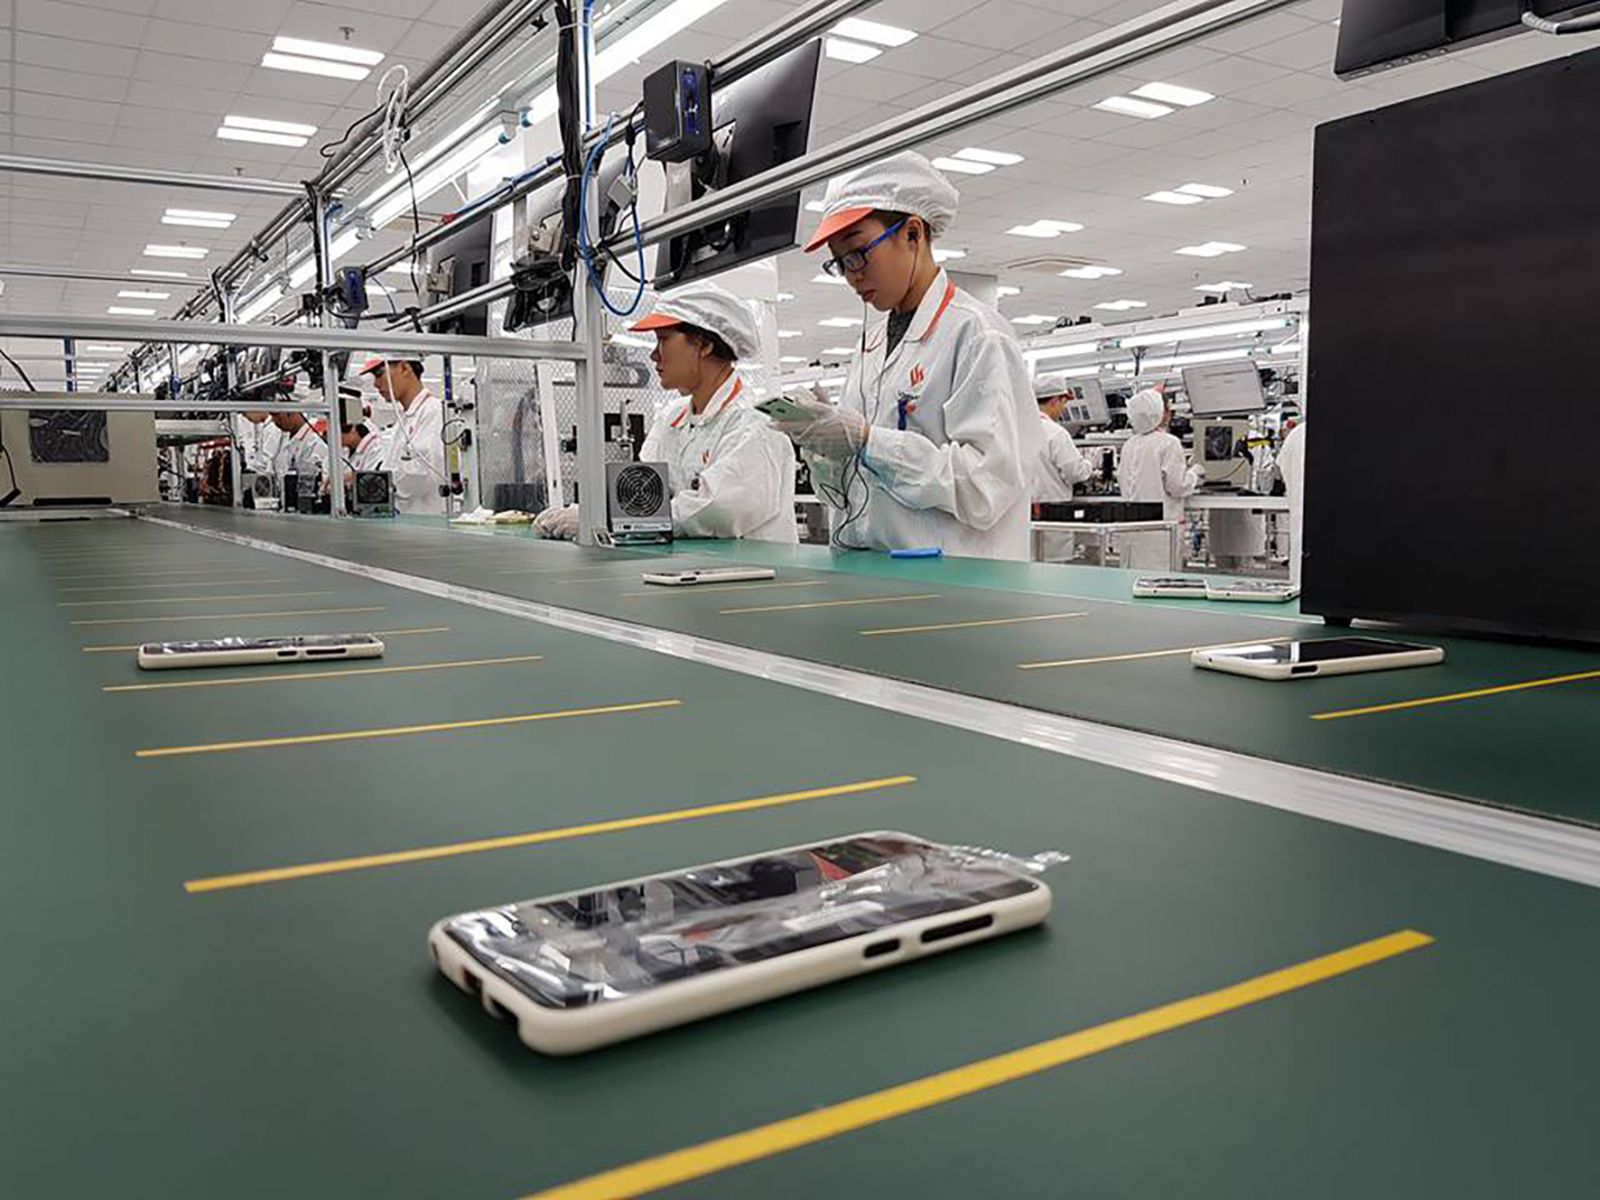  Công đoạn kiểm tra sản phẩm trước khi xuất xưởng. Ảnh: Nhà máy sản xuất điện thoại Vsmart của Tập đoàn Vingroup tại Cát Hải (Hải Phòng)